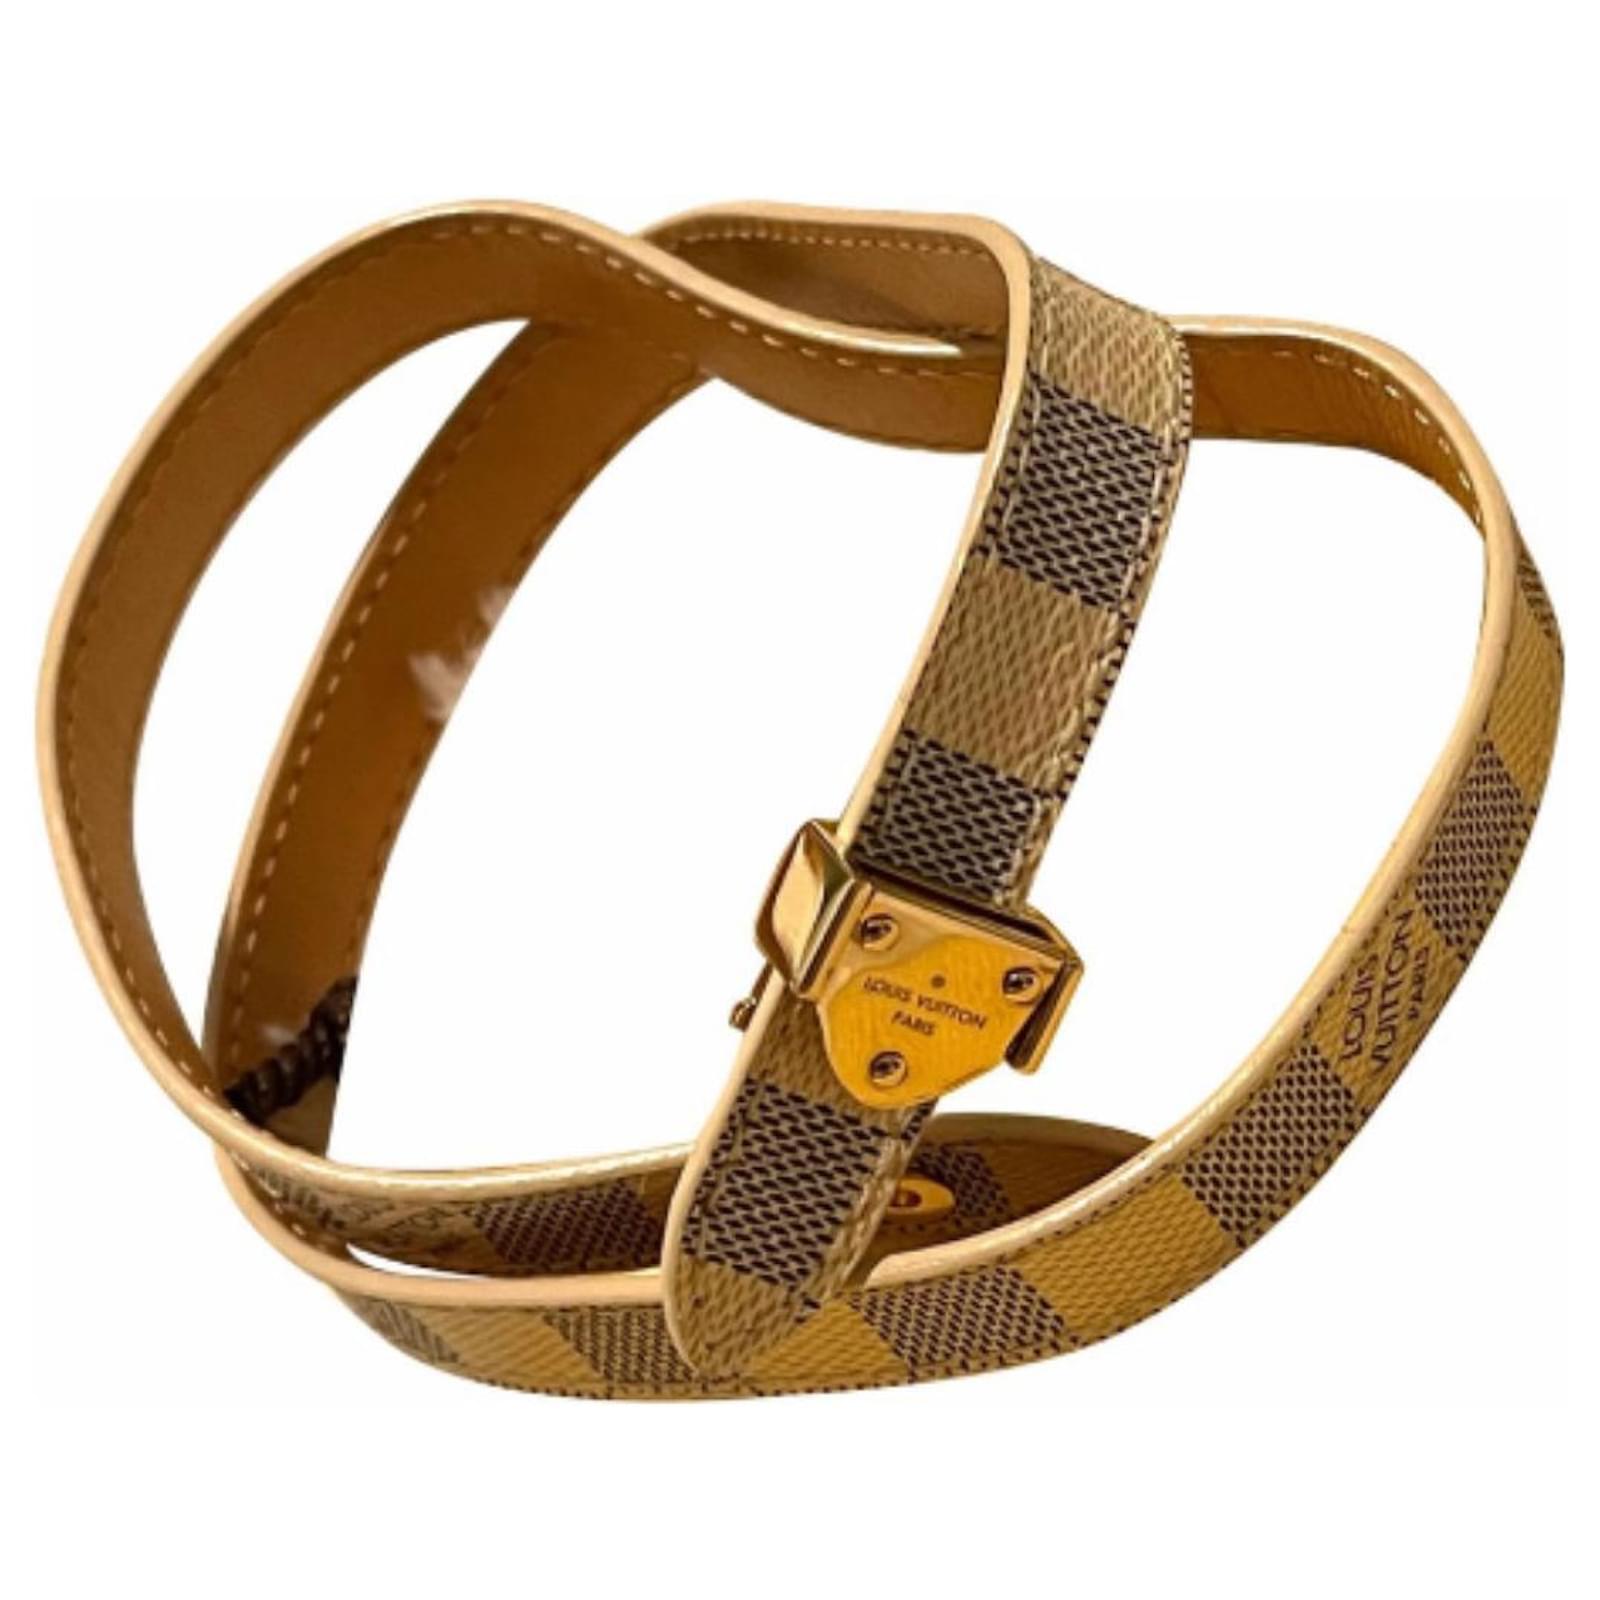 Louis Vuitton Damier Azur leather bracelet